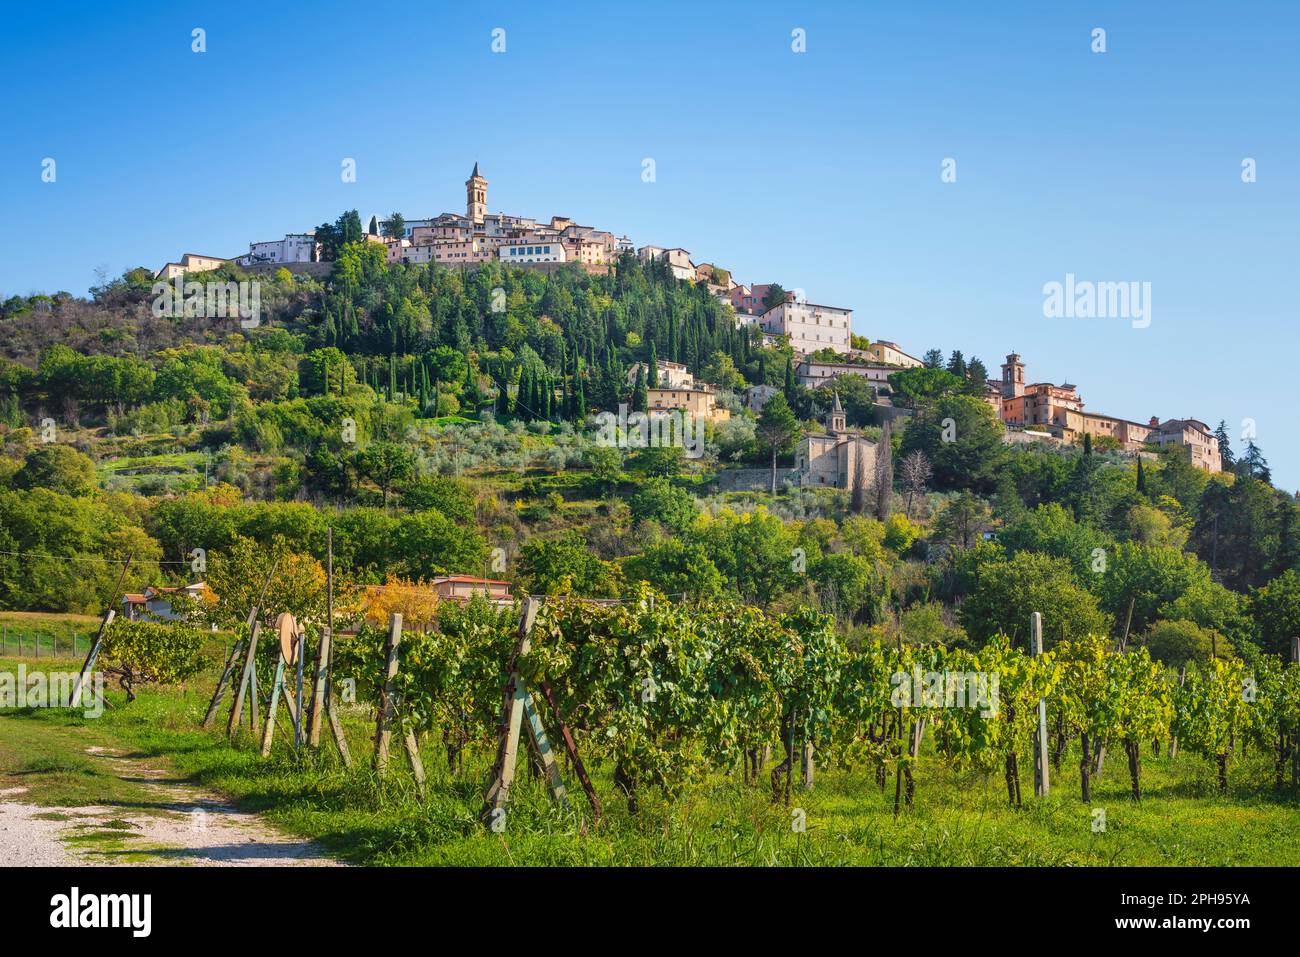 Le village de Trevi au sommet de la colline et un vignoble. Province de Pérouse, région de l'Ombrie, Italie, Europe. Banque D'Images